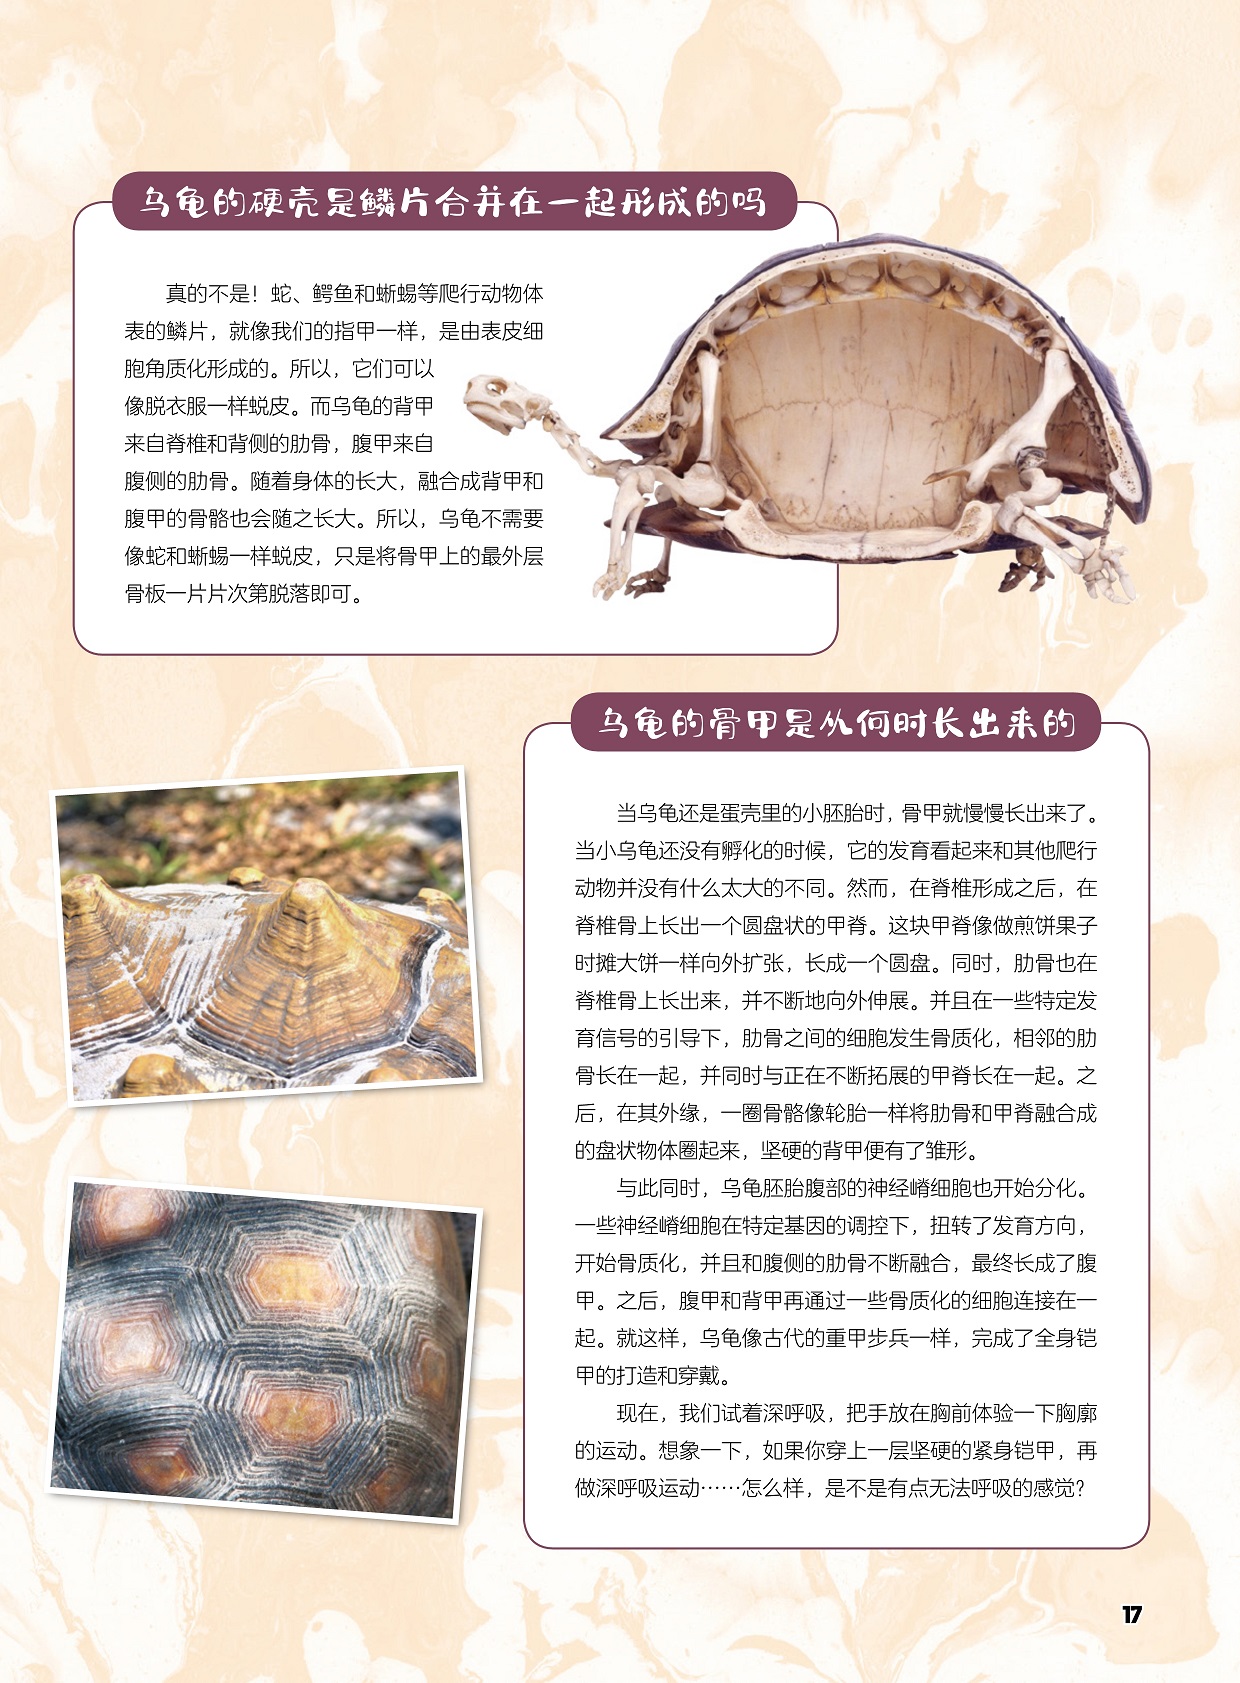 乌龟的硬壳是鳞片不是合并在一起形成的,乌龟的骨甲是从何时长出来的